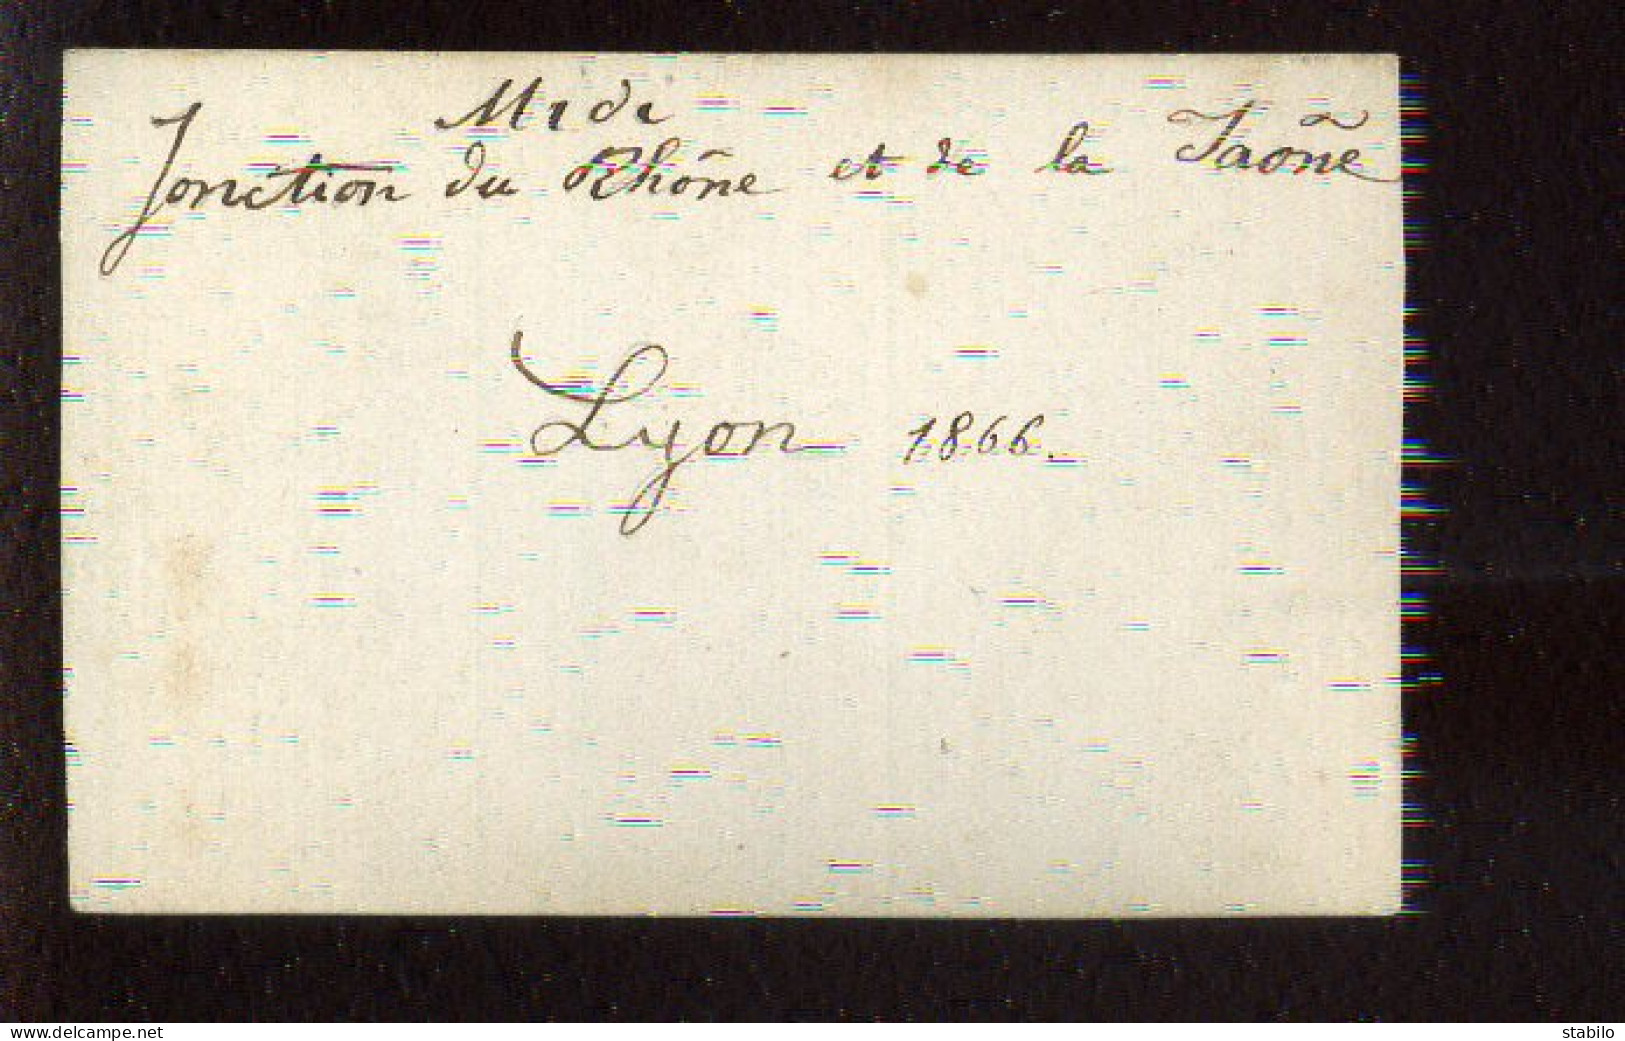 LYON (RHONE) - JONCTION DU RHONE ET DE LA SAONE 1866 - FORMAT 9.5 X 6.3 CM - Places